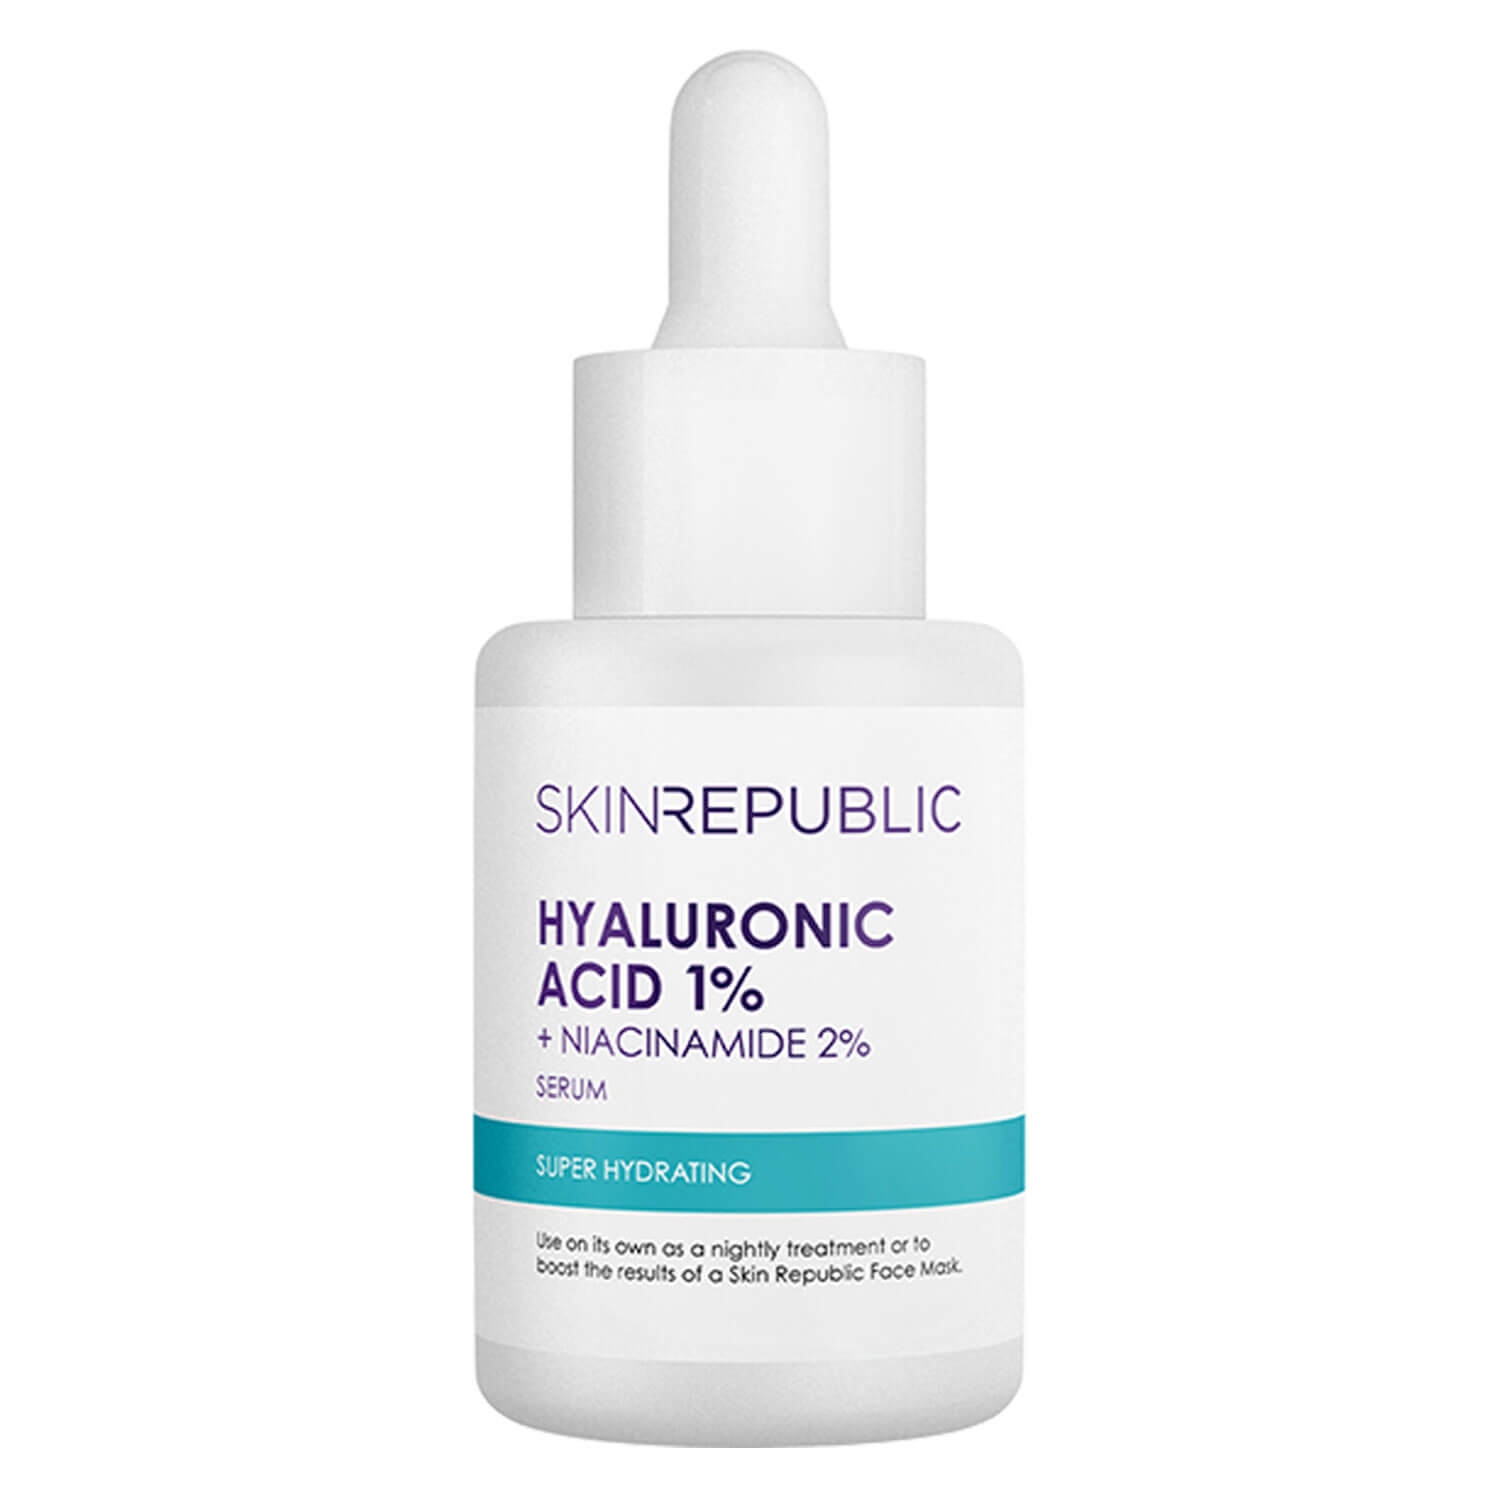 Produktbild von Skin Republic - Hyaluronic Acid 1% + Niacinamide 2% Serum